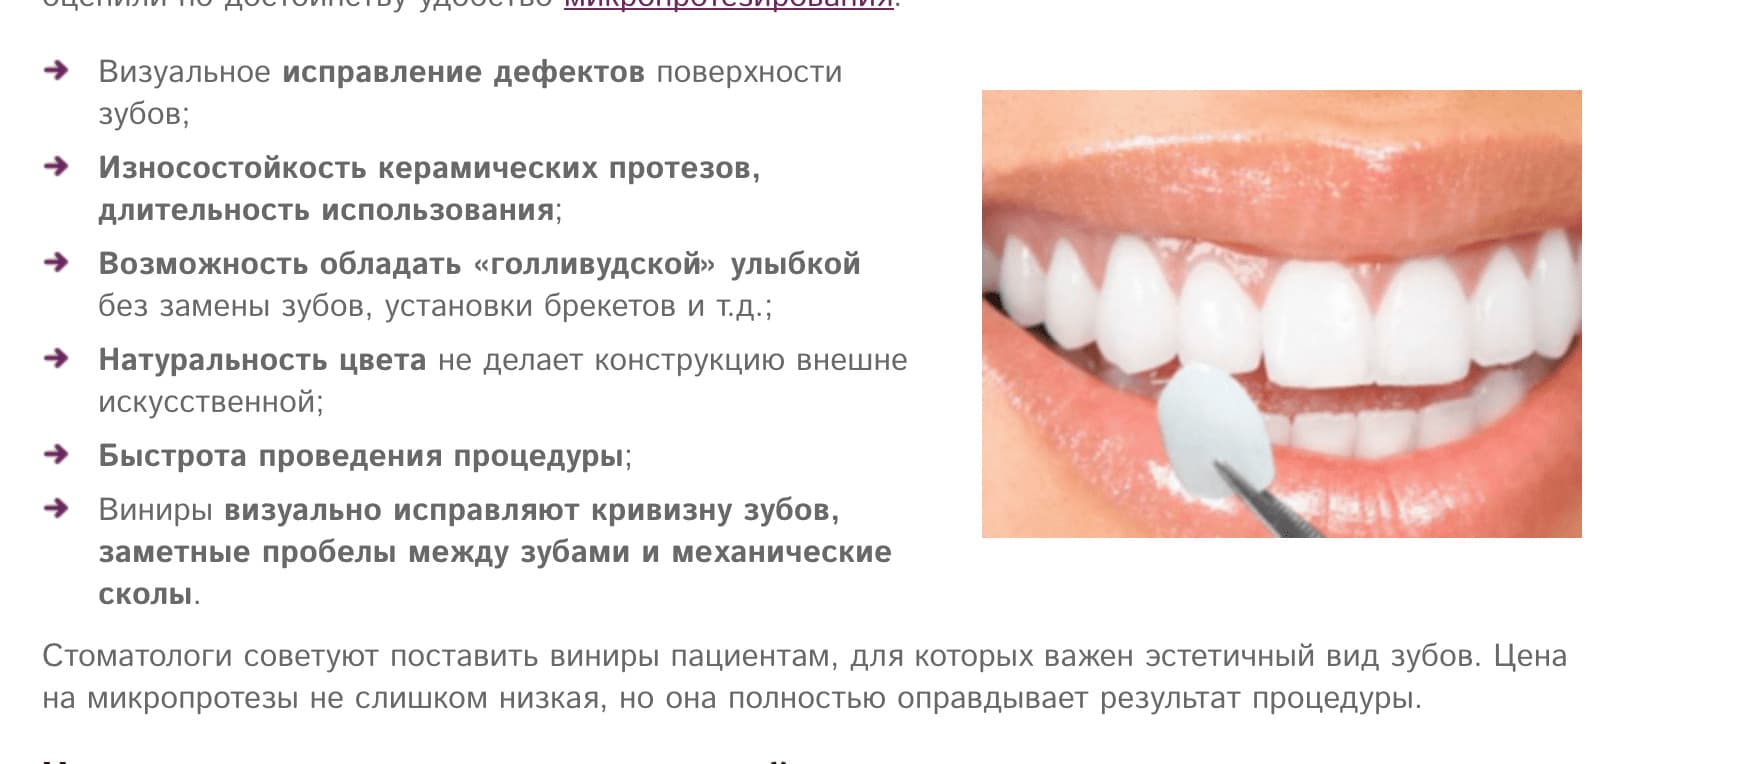 seo продвижение стоматологии заказать